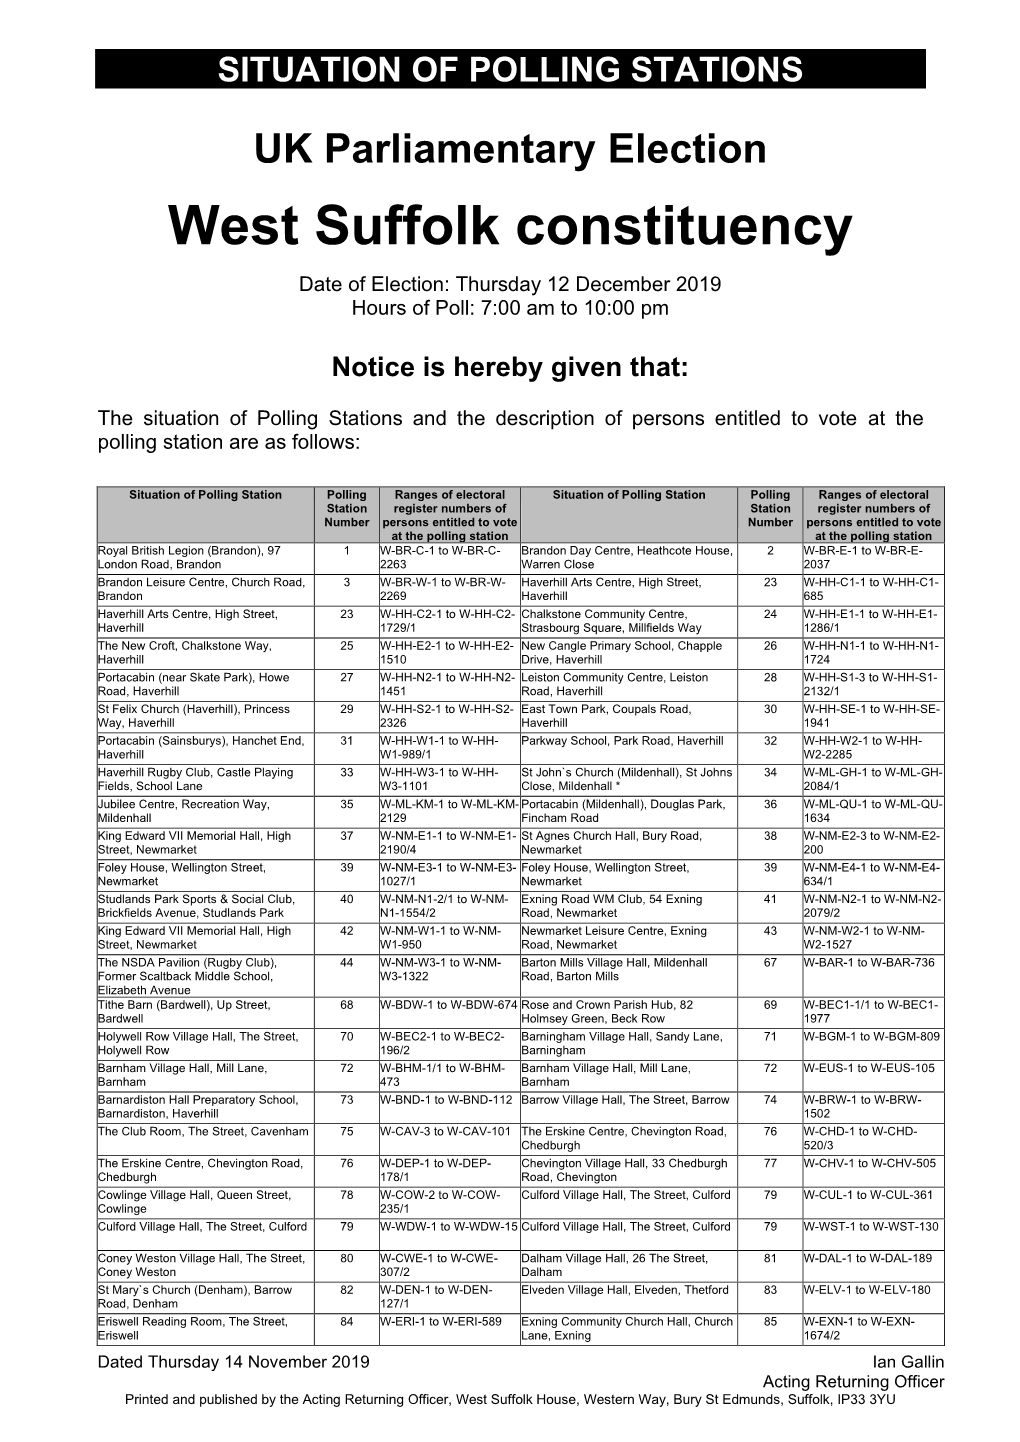 West Suffolk Constituency